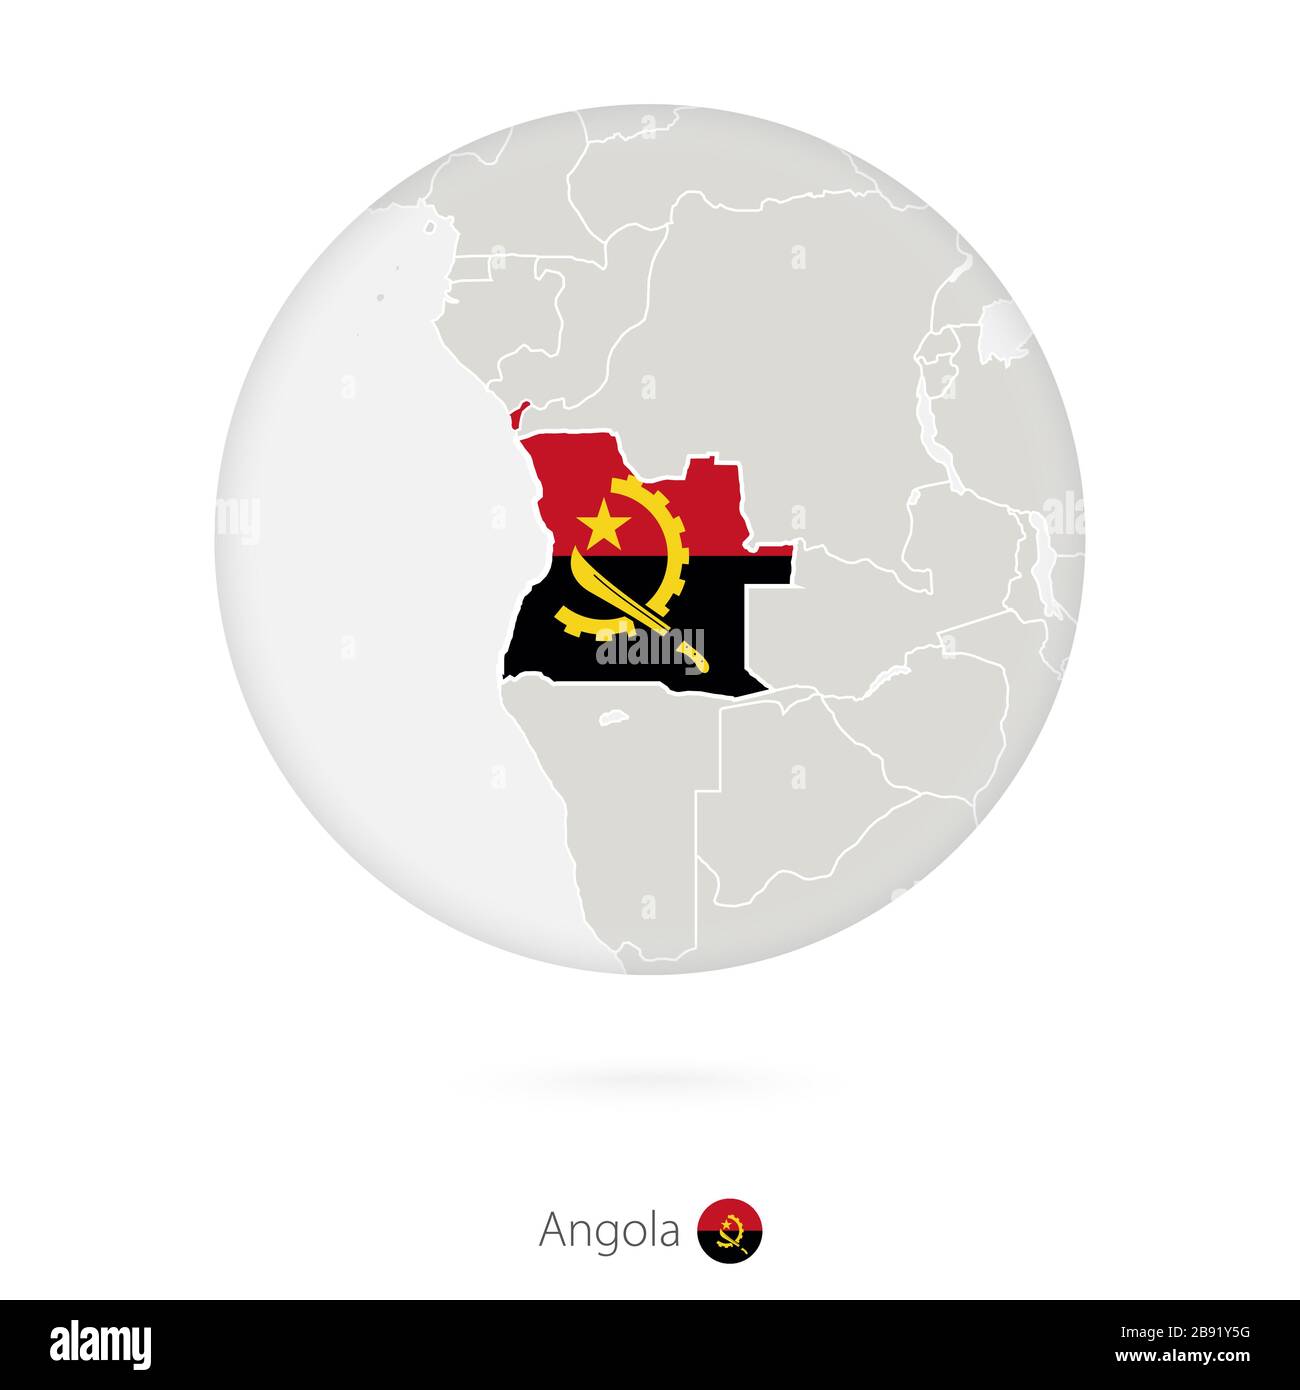 Mapa De Angola Y Bandera Nacional En Círculo Contorno Del Mapa De Angola Con Bandera 0008